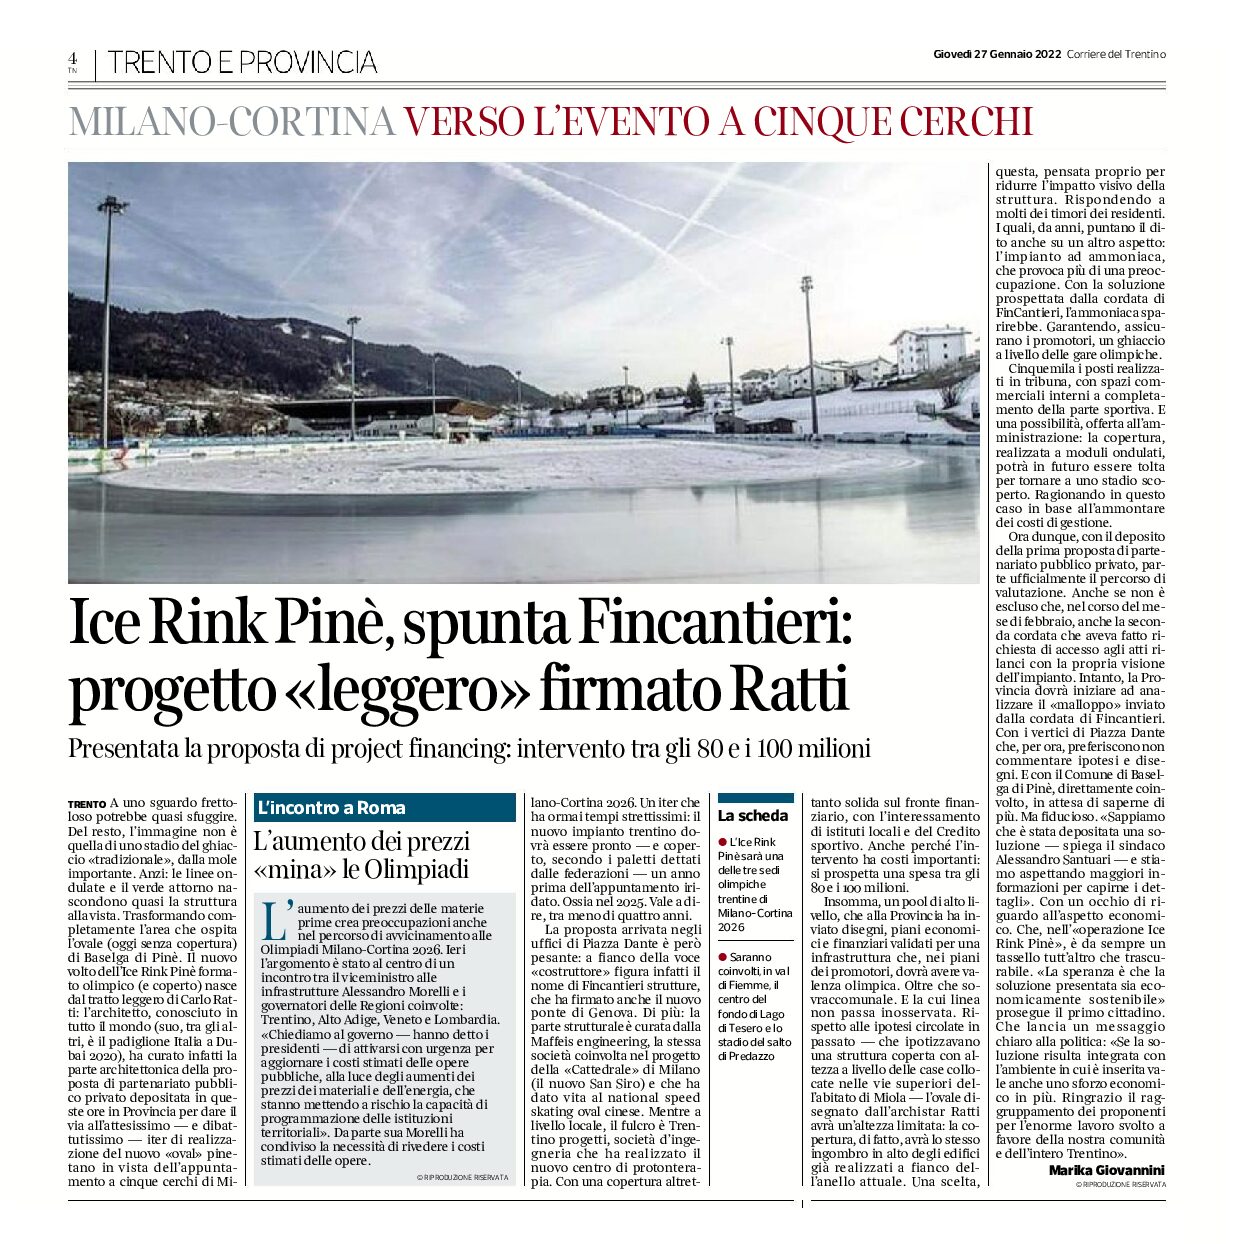 Ice Rink Pinè: spunta Fincantieri, progetto “leggero” firmato Ratti